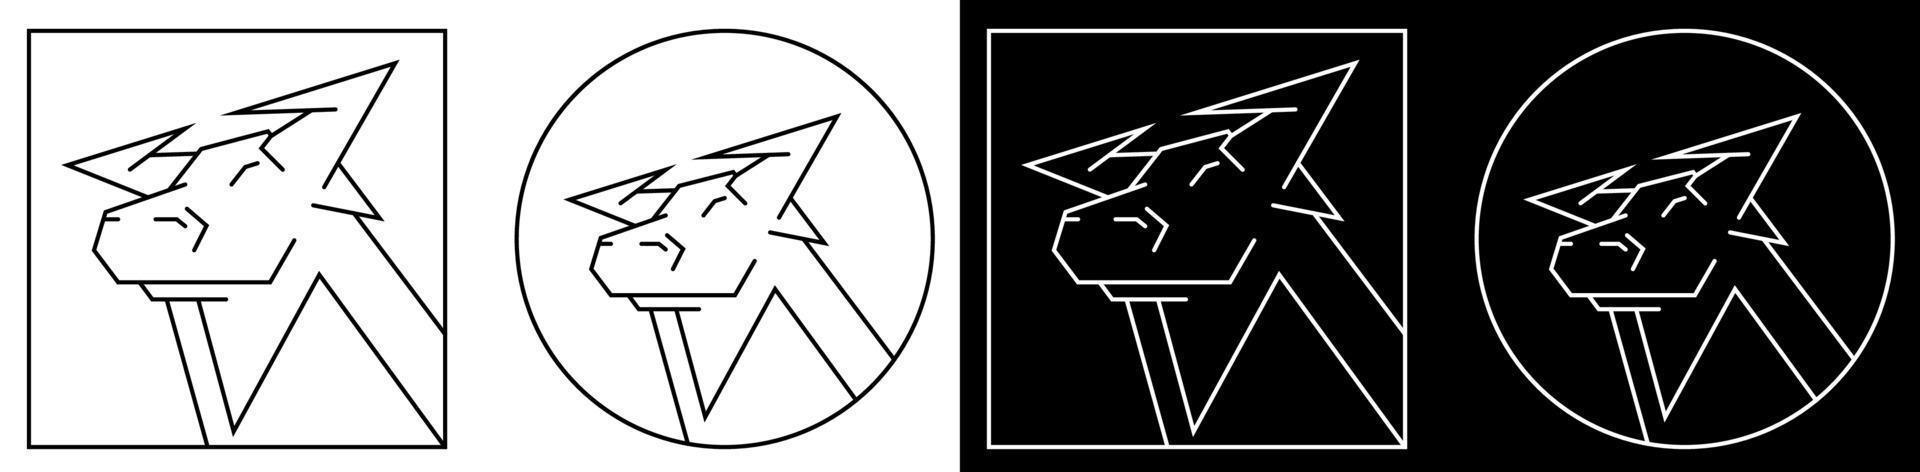 2021 stier, os het symbool van het nieuwe jaar van de chinese kalender. gestileerde afbeelding in regelmatige geometrische lijnen. pictogram, logo in zwart-wit stijl vector